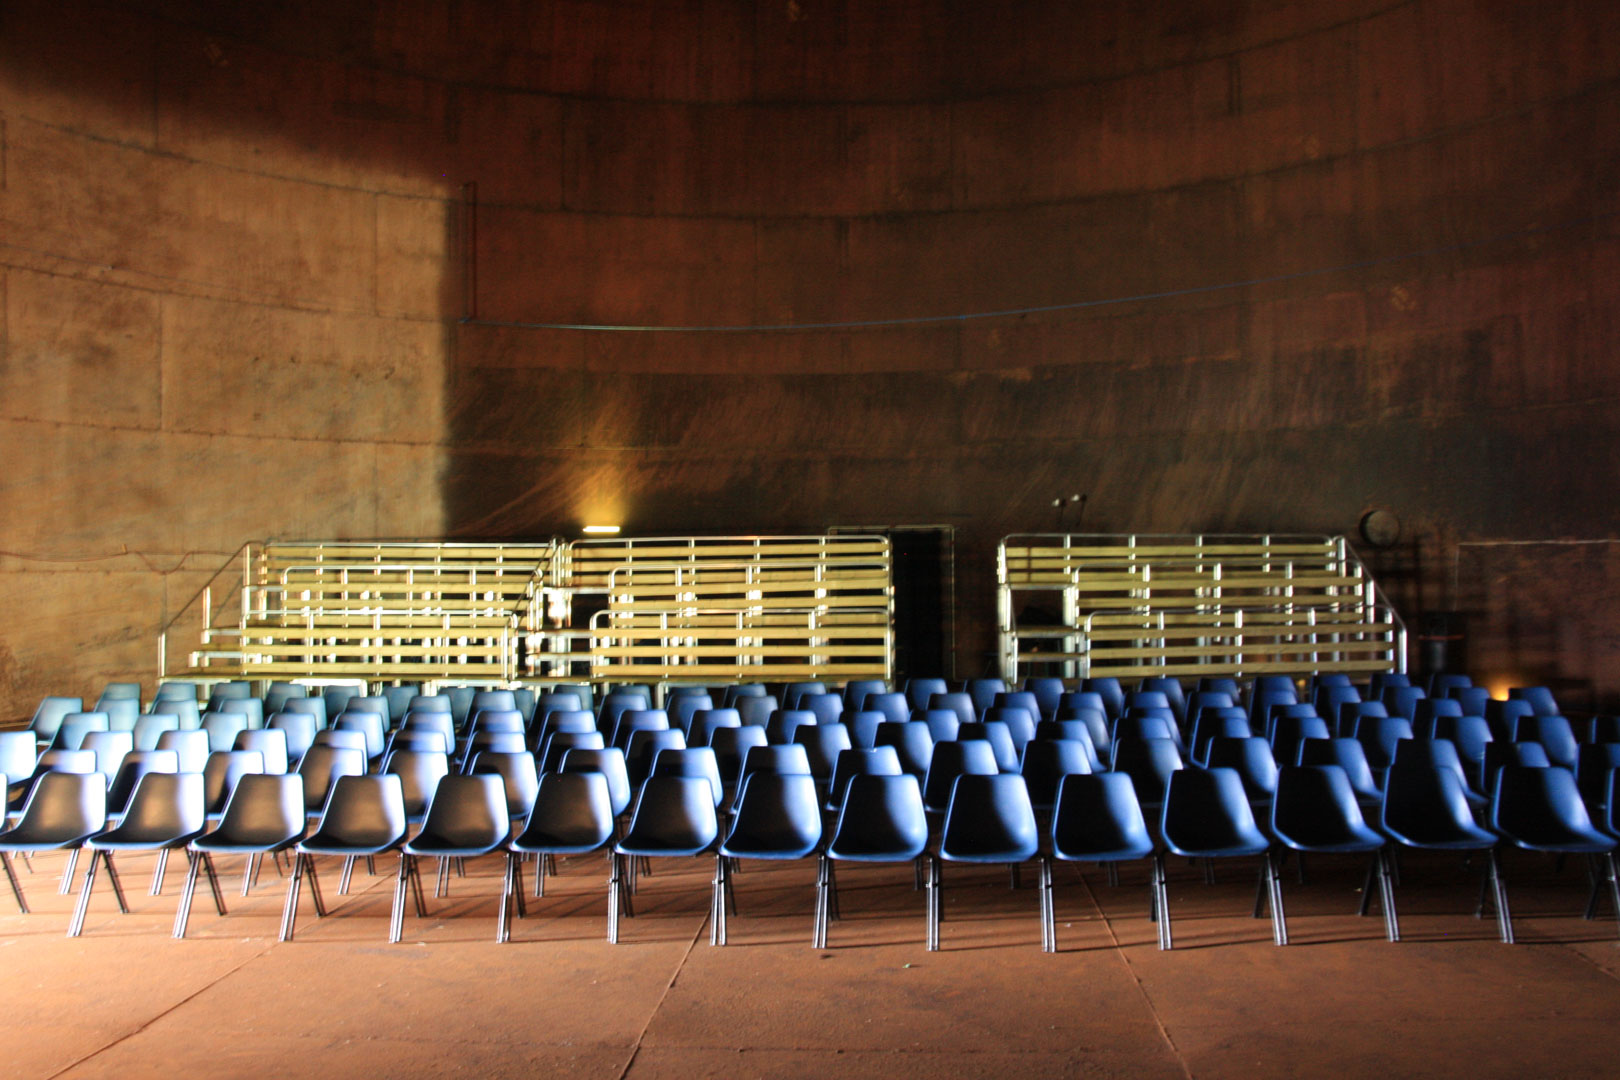 De gamle råstofftankene blir i dag brukt til konserter og andre kulturarrangementer og skaper en unik atmosfære og akustikk. Foto: Ulf I. Gustafsson Riksantikvaren